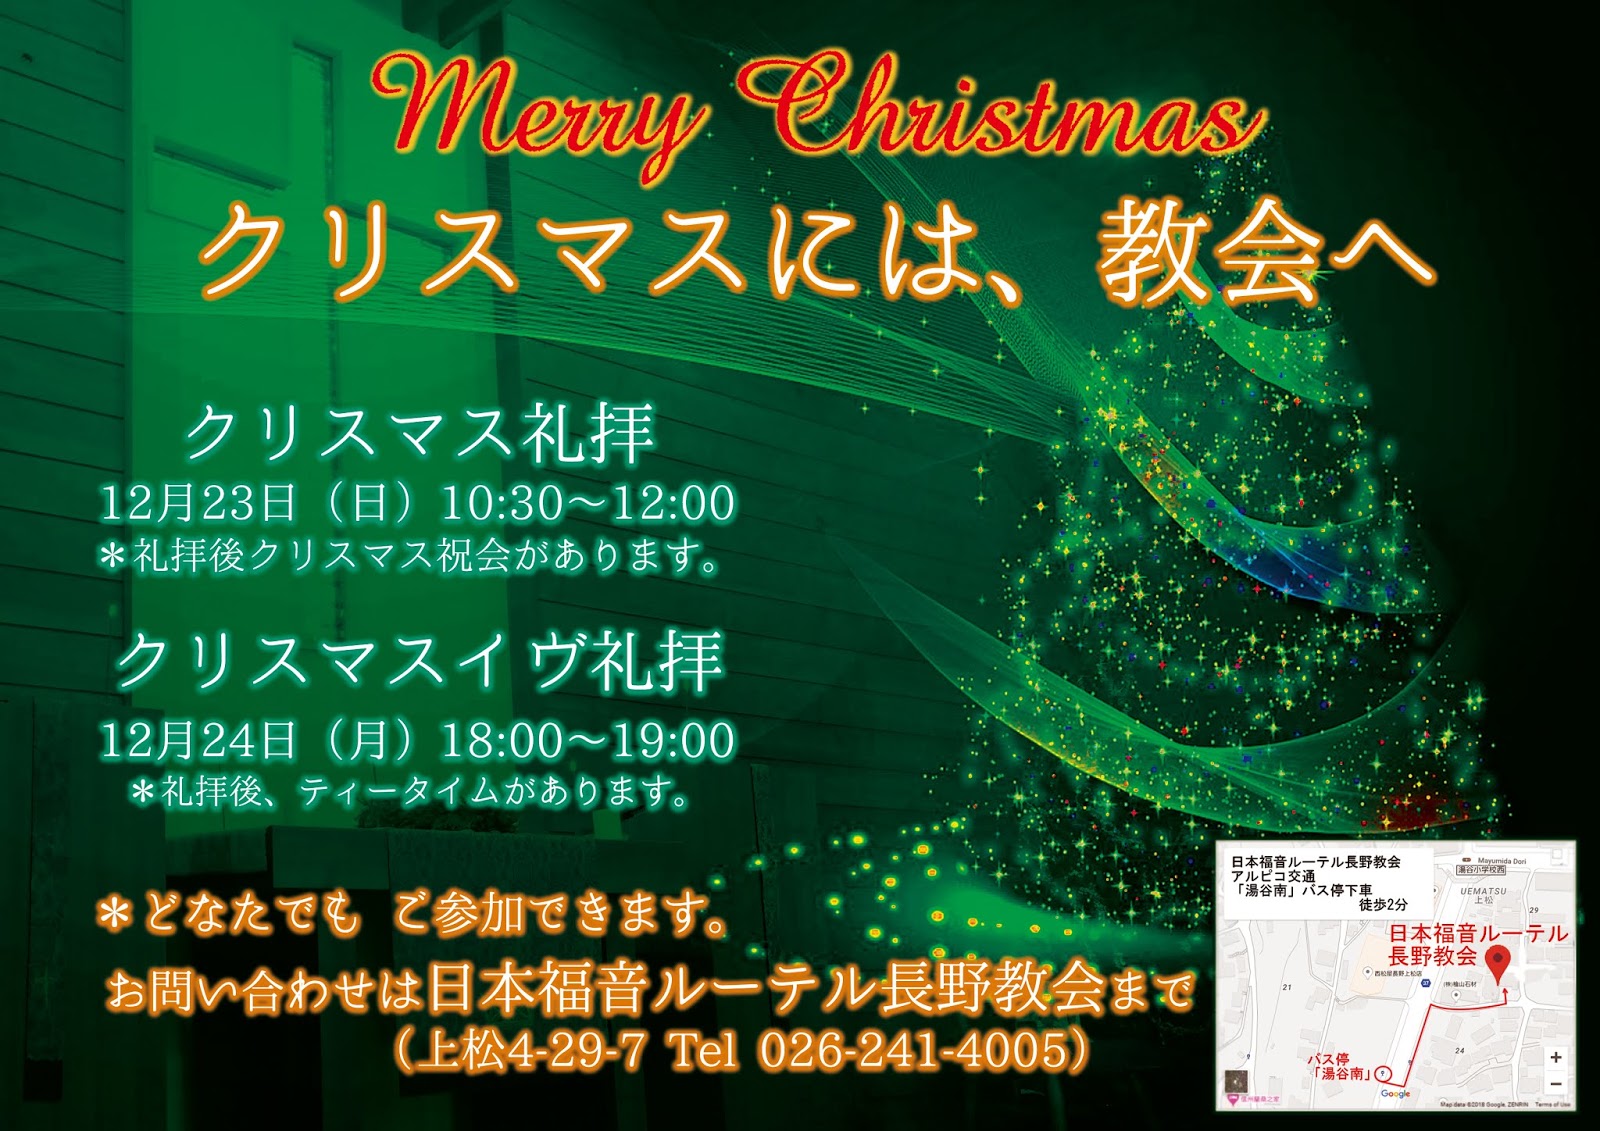 日本福音ルーテル長野教会 松本教会 長野教会クリスマスイベントのご案内